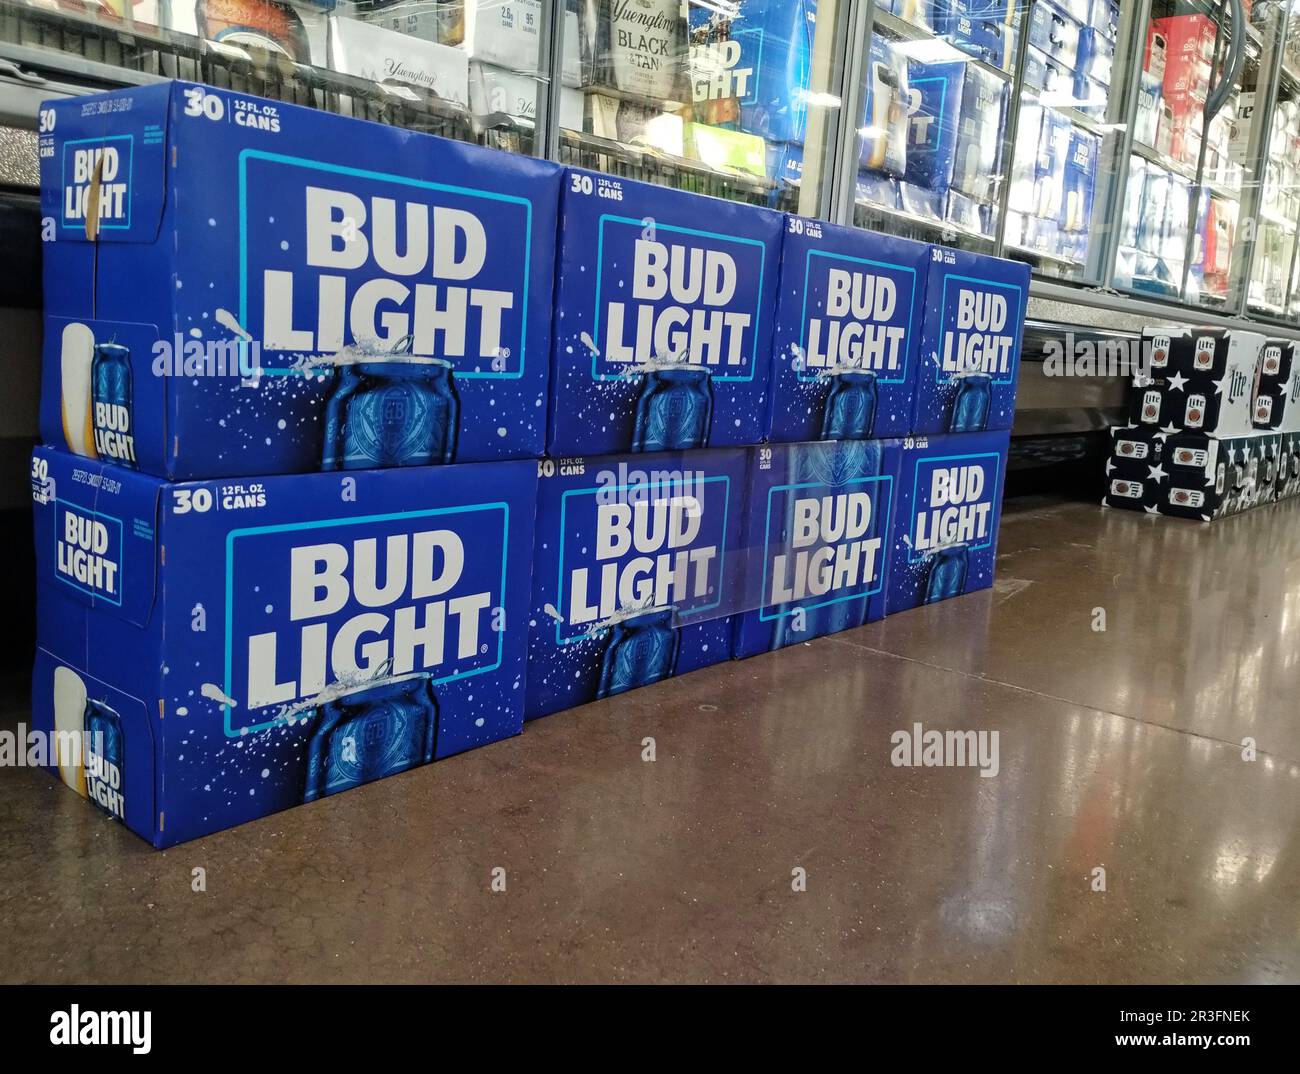 Les caisses de bière légère Bud sont situées dans l'allée des bières d'une épicerie Kroger le mardi, 23 mai 2023 à Owensboro, comté de Daviess, Kentucky, ÉTATS-UNIS. En vue du week-end des fêtes du jour du souvenir aux États-Unis, les ventes de Bud Light ne montrent aucun signe de reprise par rapport à la réaction d'avril créée par un partenariat promotionnel avec Dylan Mulvaney, l'influent sur les médias sociaux transgenres, avec une baisse de 28,4 % des ventes d'une année sur l'autre au cours de la semaine terminée 13 mai, Selon NielsenIQ, les données d'analyse au point de vente sont publiées dans la publication Beer Business Daily sur le commerce de l'industrie. (Photo APEX MediaWire par Billy Suratt) Banque D'Images